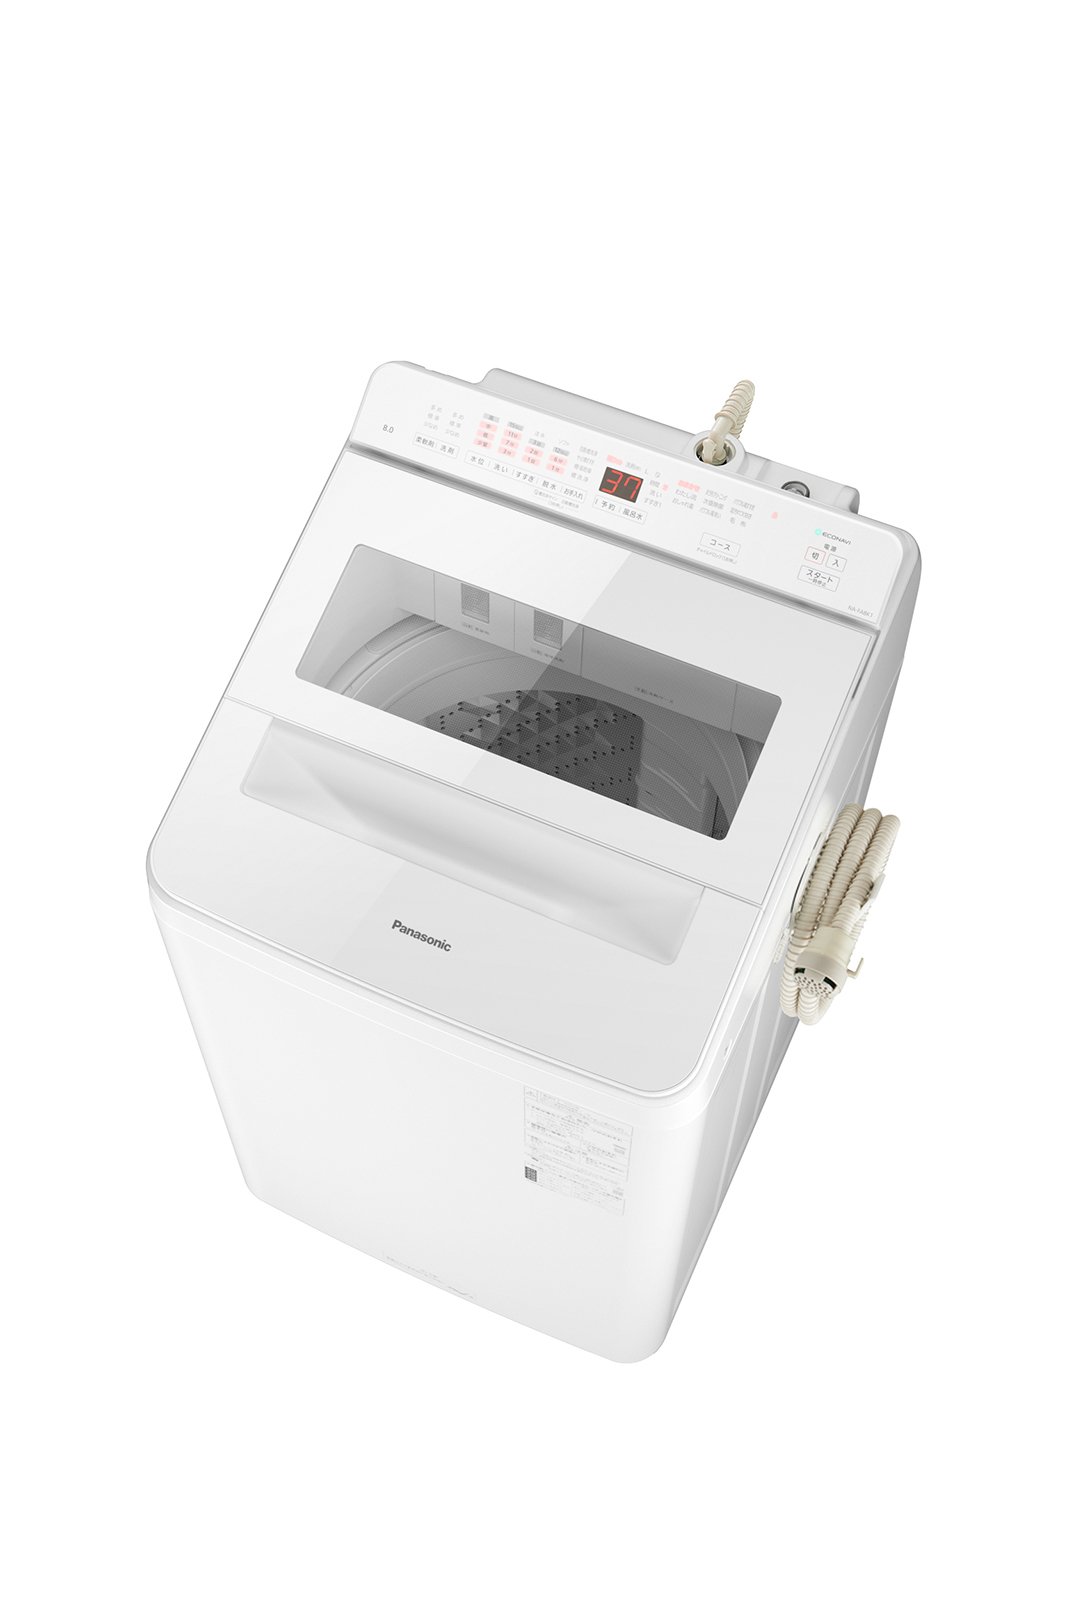 全自動洗濯機 NA-FA12V1他 5機種を発売 | 個人向け商品 | 製品 